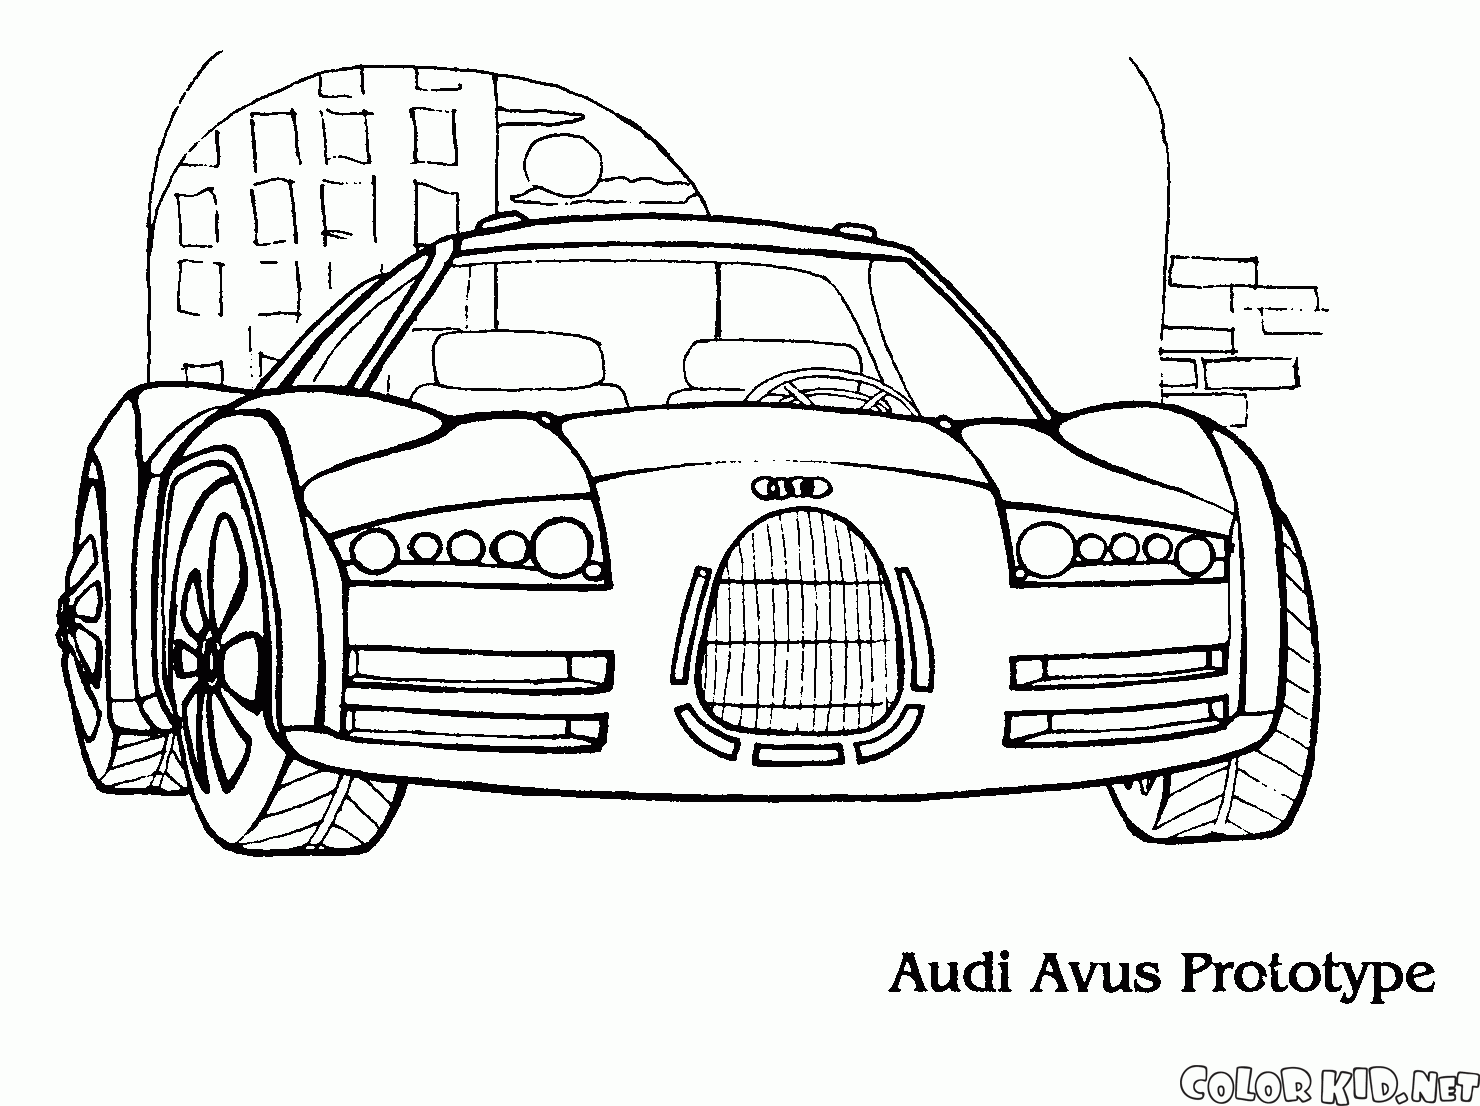 The new prototype Audi